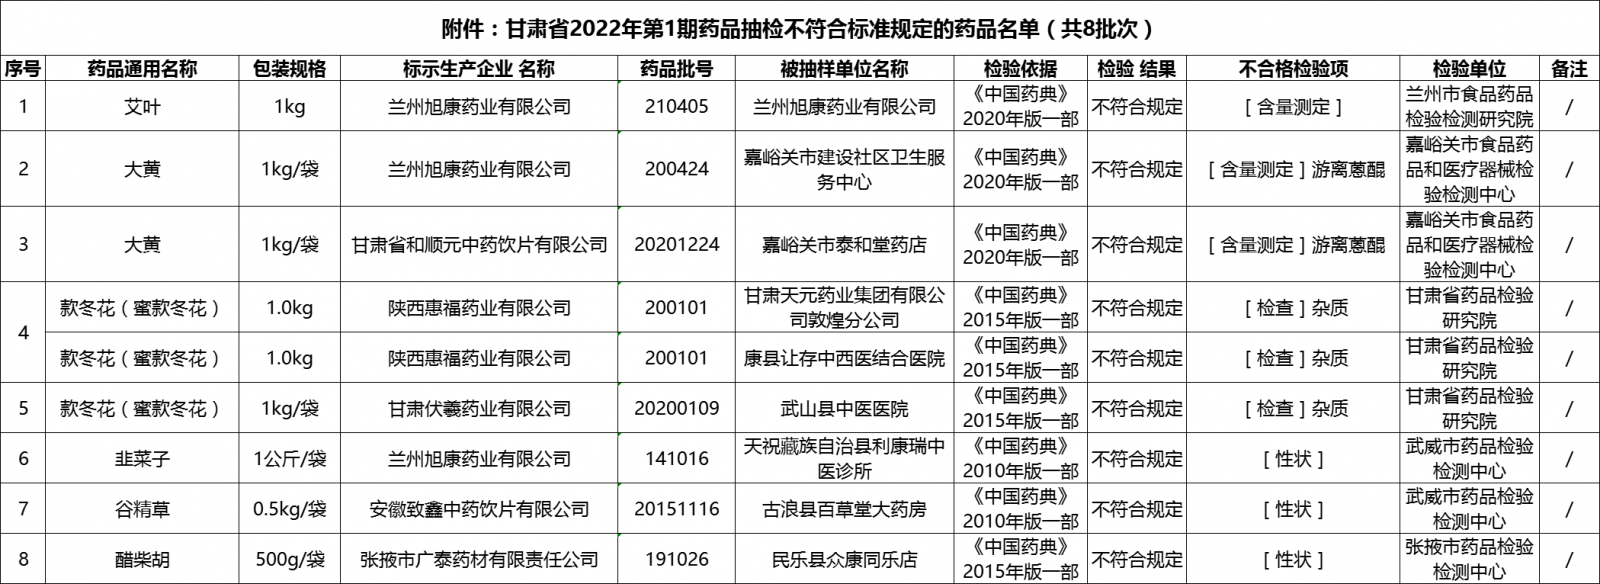 甘肃省2022年第1期药品抽检不符合标准规定的药品名单